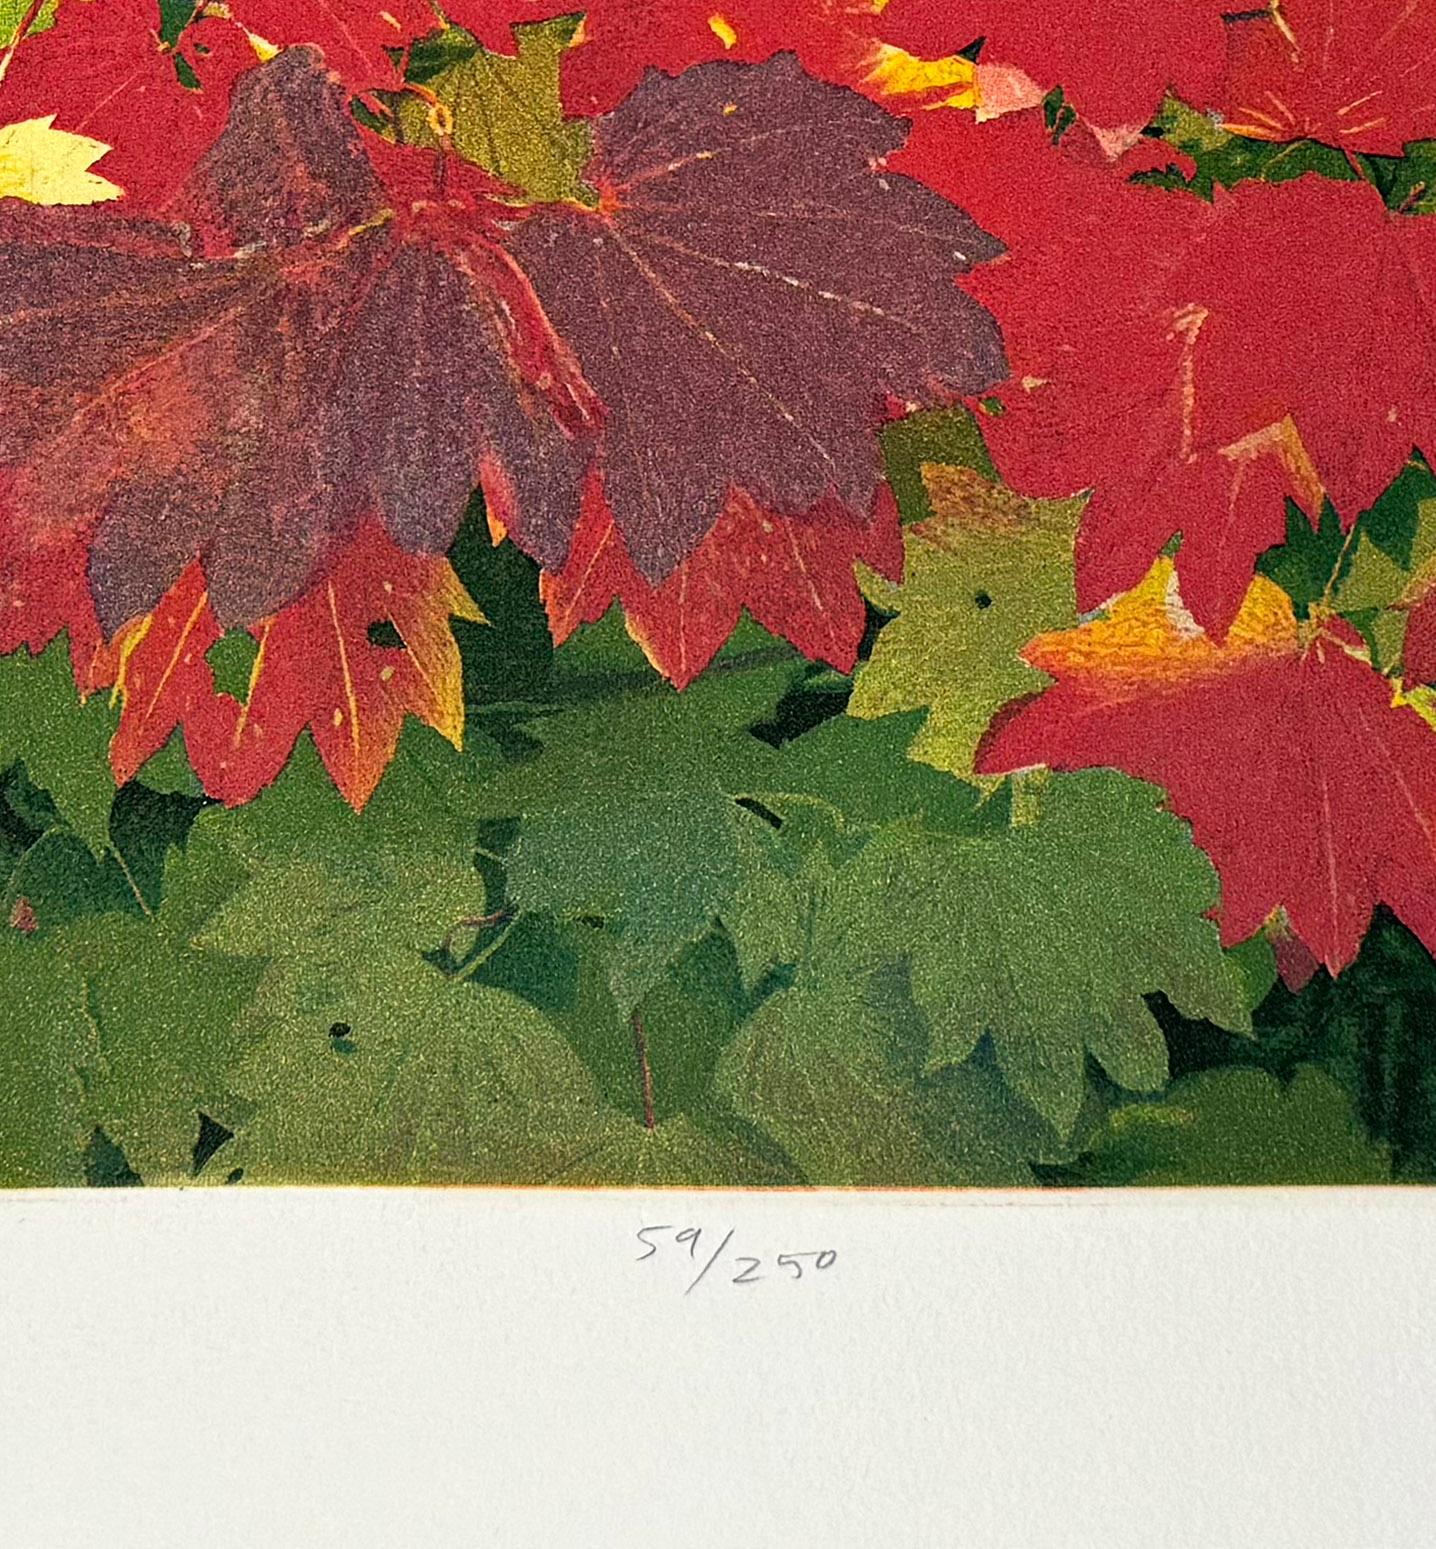 Signé, titré et numéroté par l'artiste
Taille de l'image : 12 x 18 pouces
Année : 2007

Couleurs d'automne à Bellingham, WA. Scène de soleil sur un feuillage d'automne. Gravure et aquatinte signées et numérotées

Né à Berkeley, en Californie, le 21